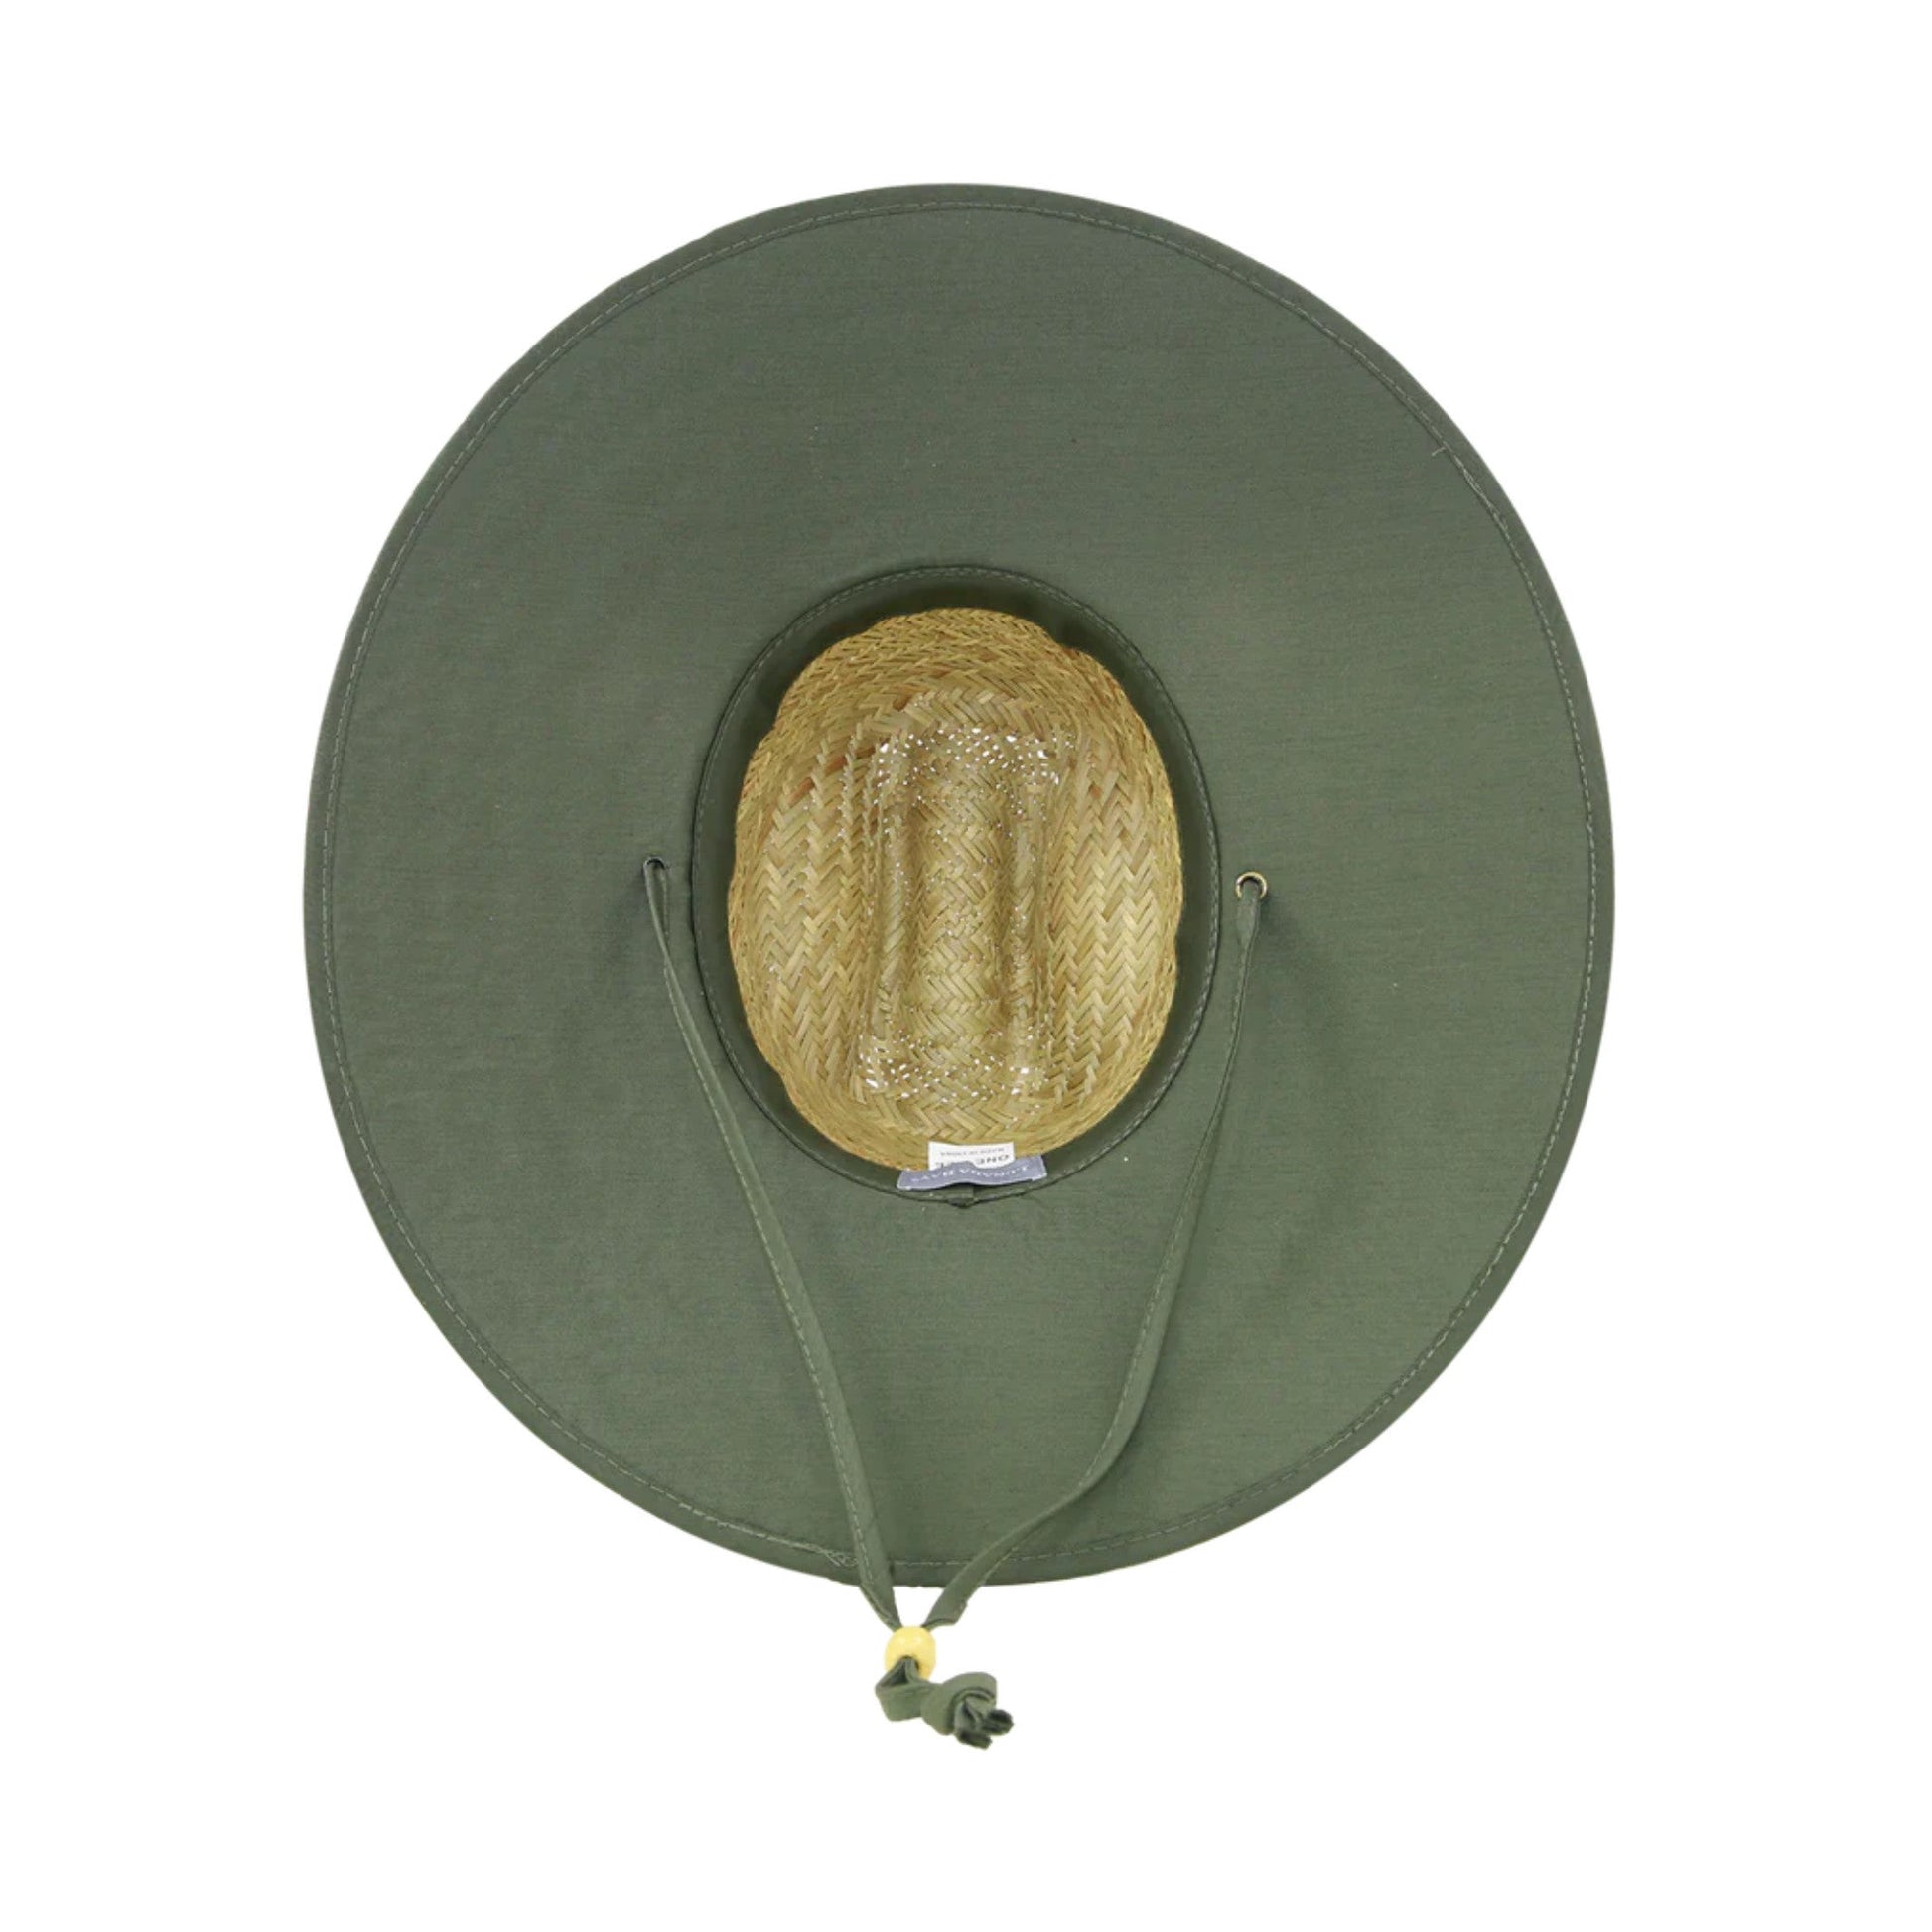 Straw Hats - Lifeguard Wide Brim Straw Sun Hat Dark Green